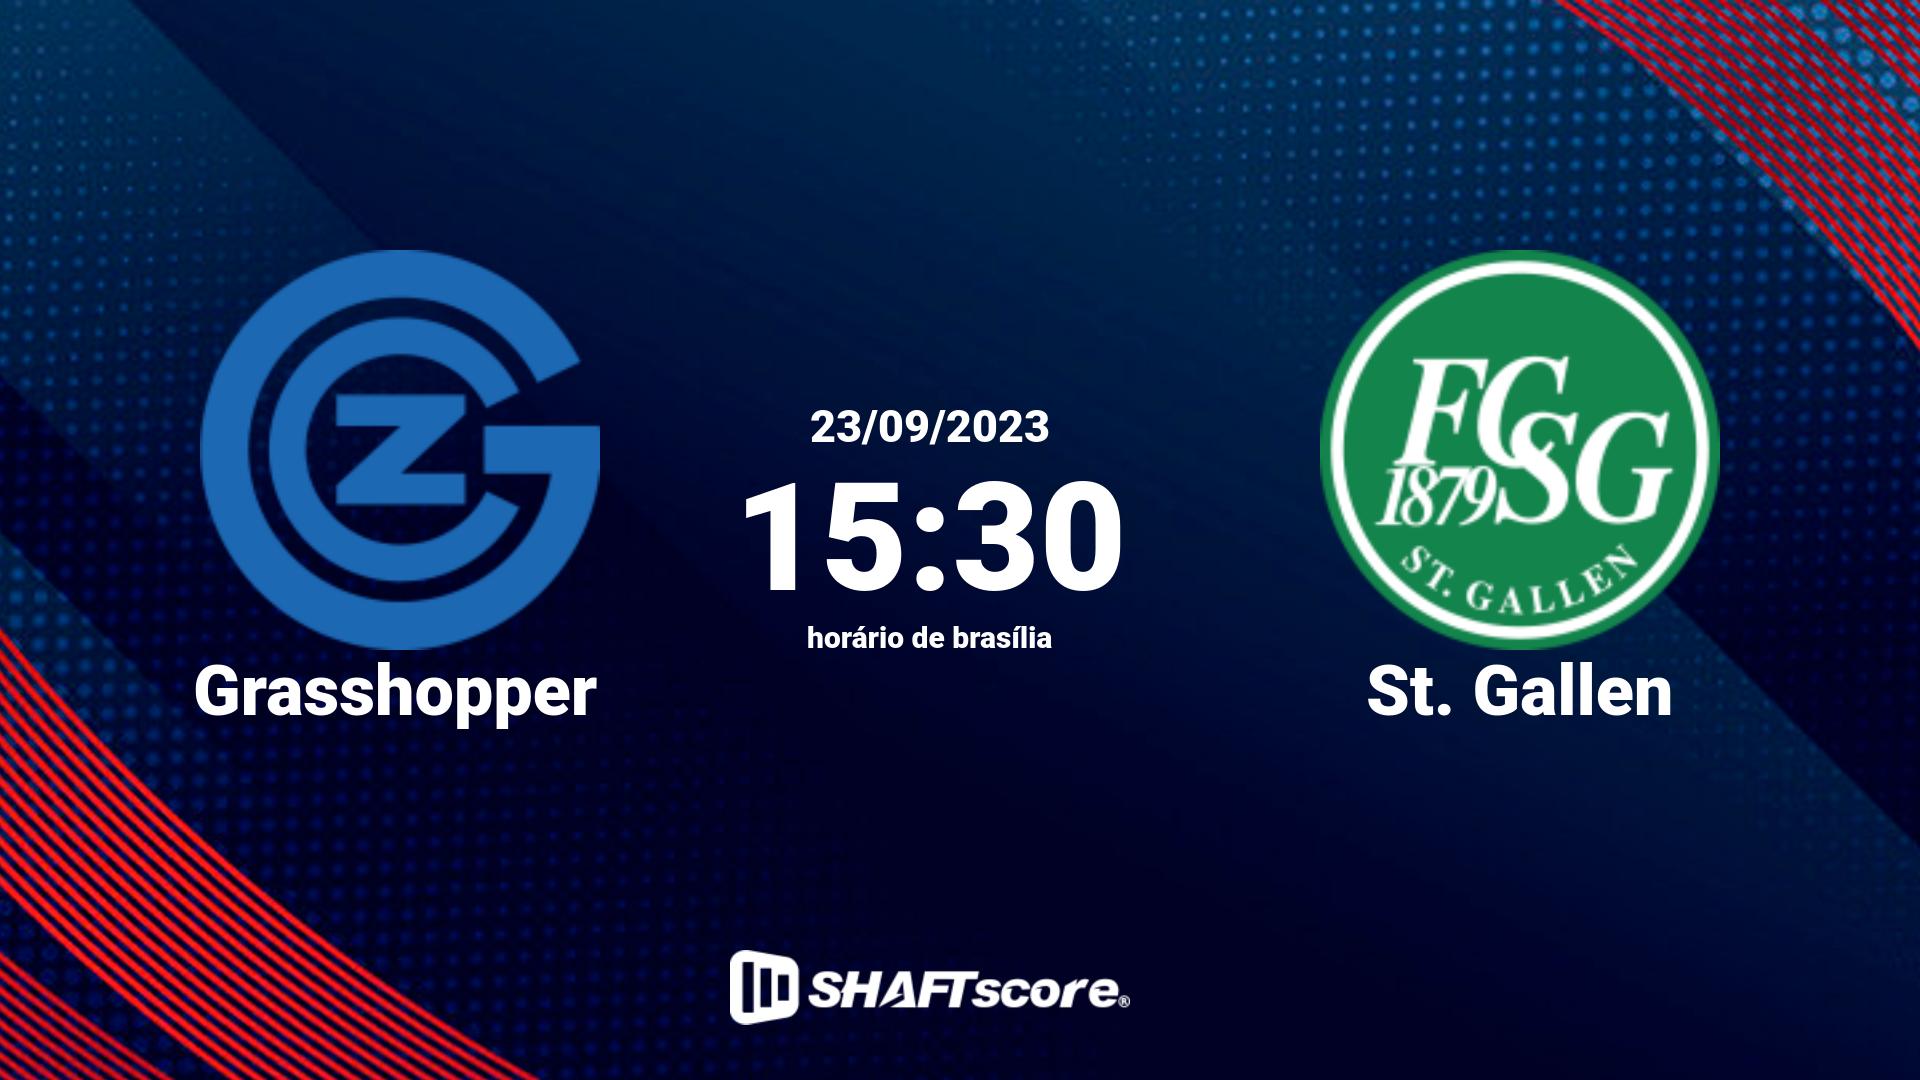 Estatísticas do jogo Grasshopper vs St. Gallen 23.09 15:30